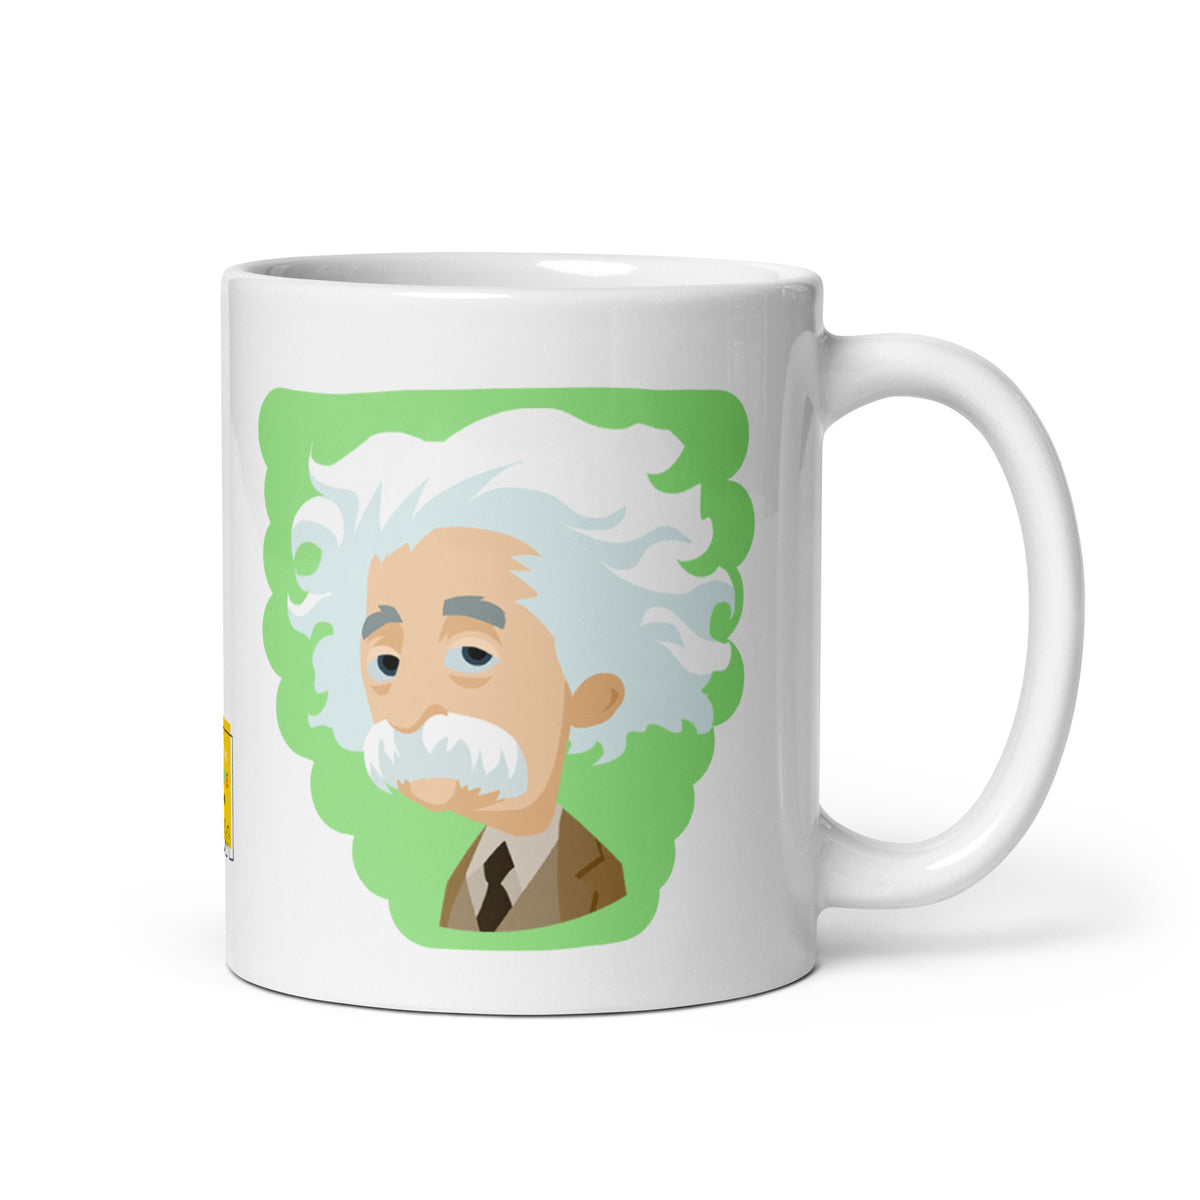 Albert Einstein Mug